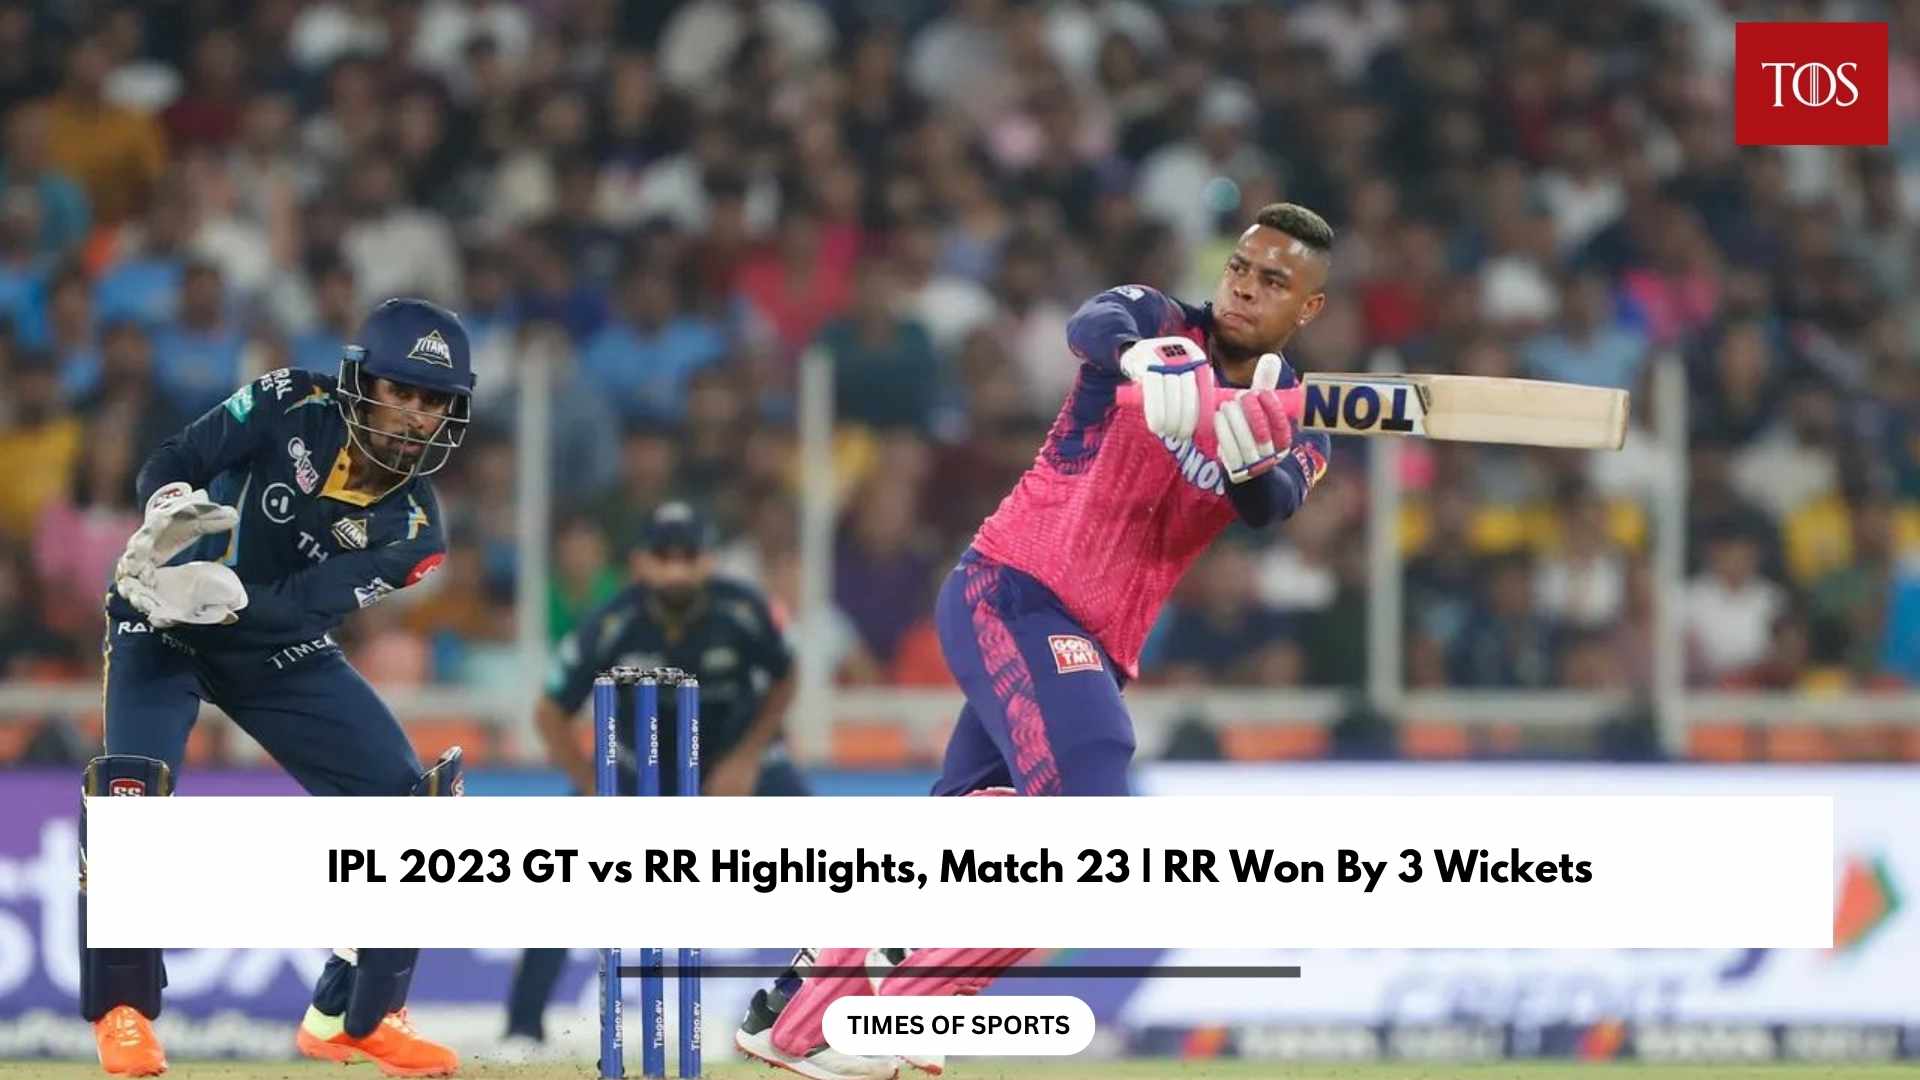 IPL 2023 GT vs RR Highlights